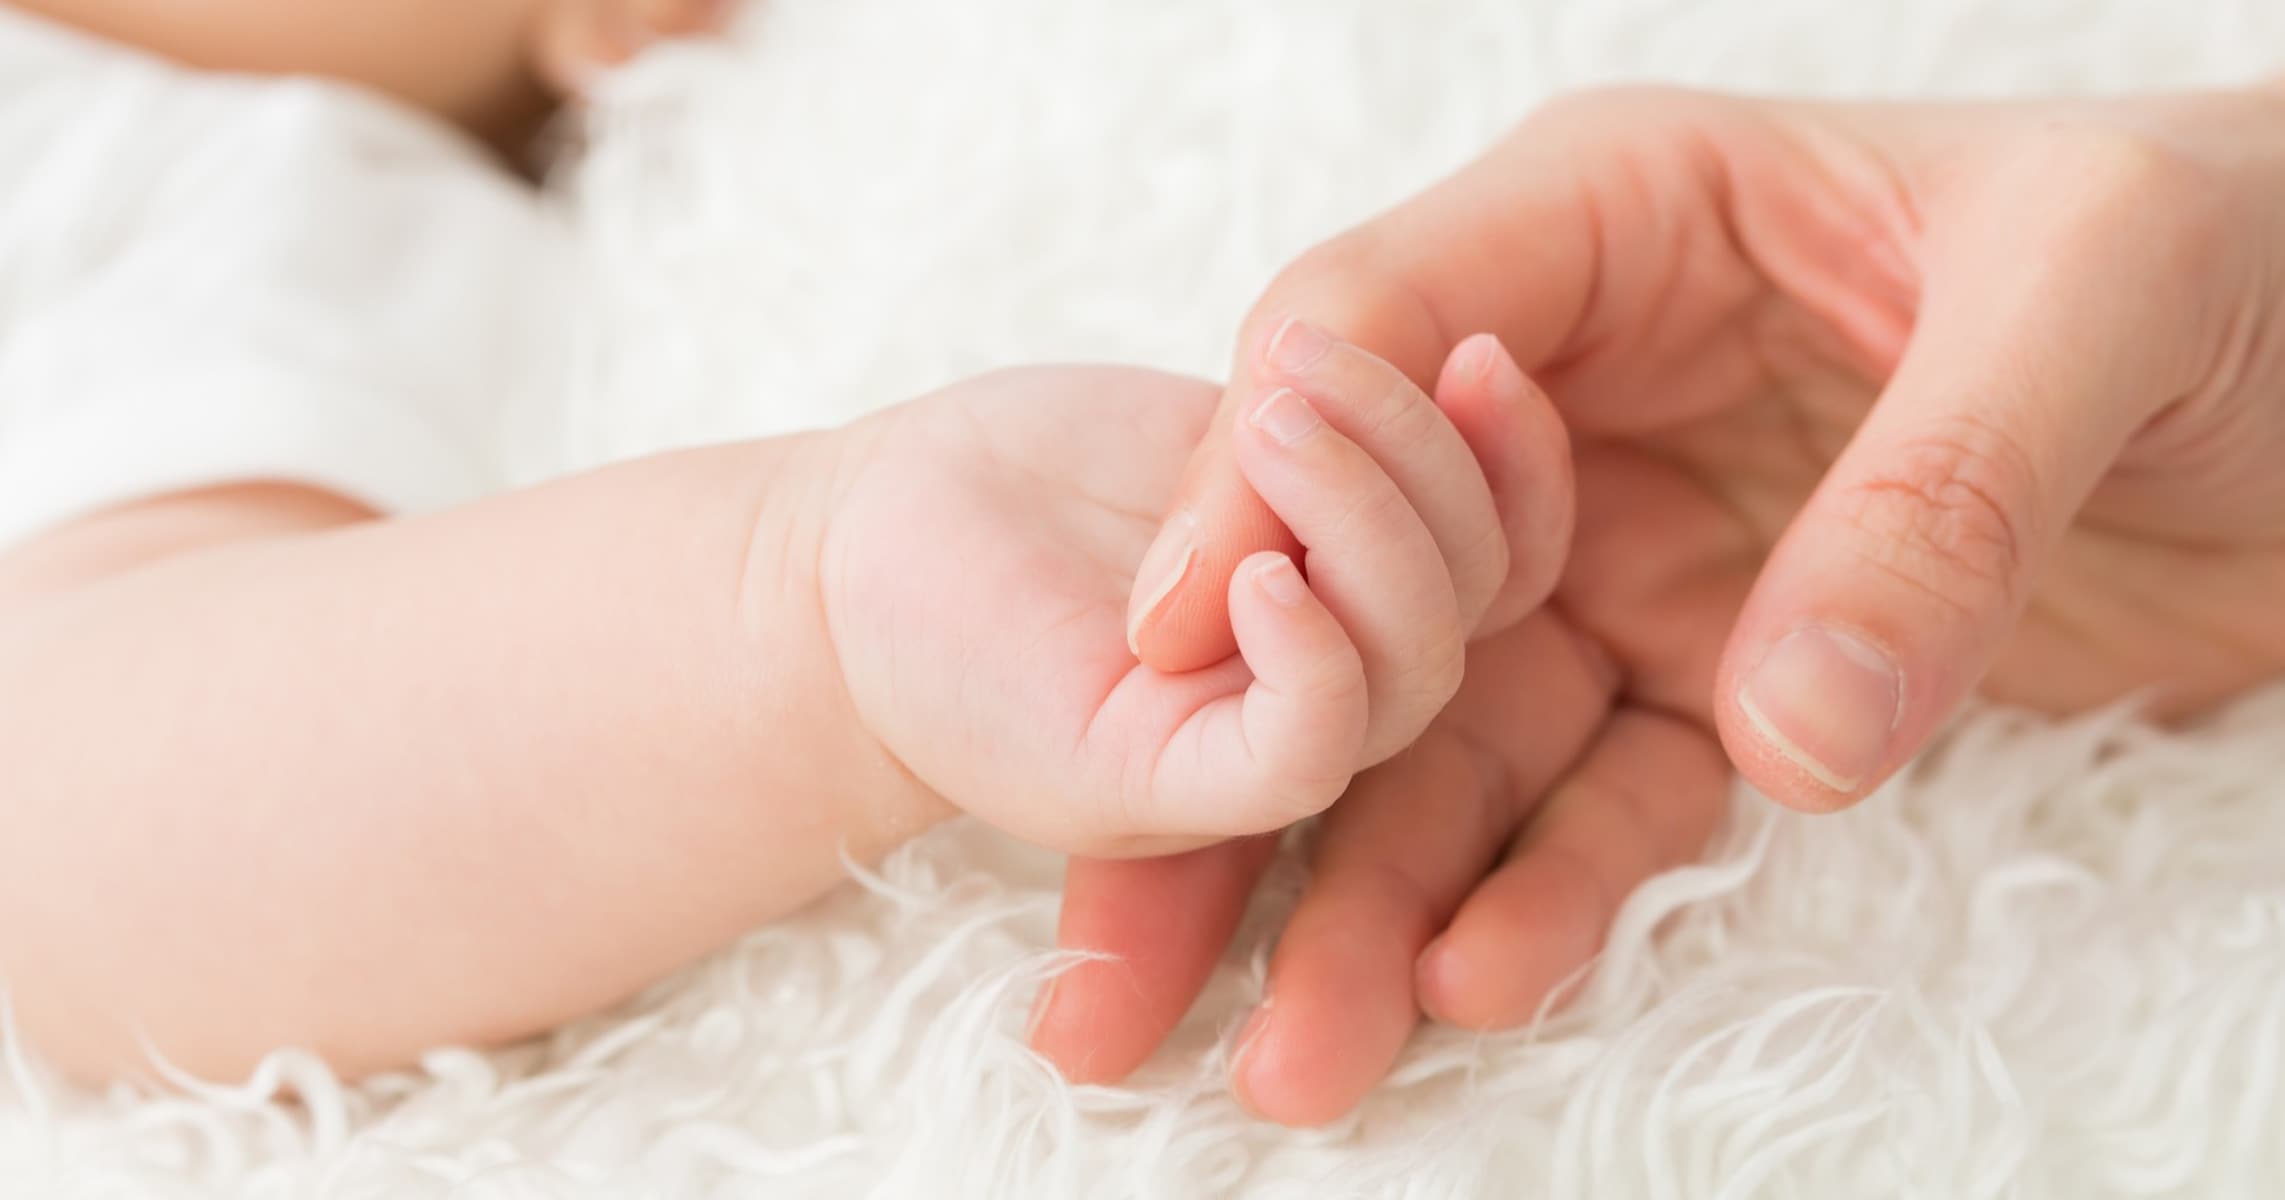 赤ちゃんのぎゅっと握った手のひら」を簡単にパーにして洗える方法が話題に「やってみたら開いてくれました」「宝物を握りしめてる」 | StartHome